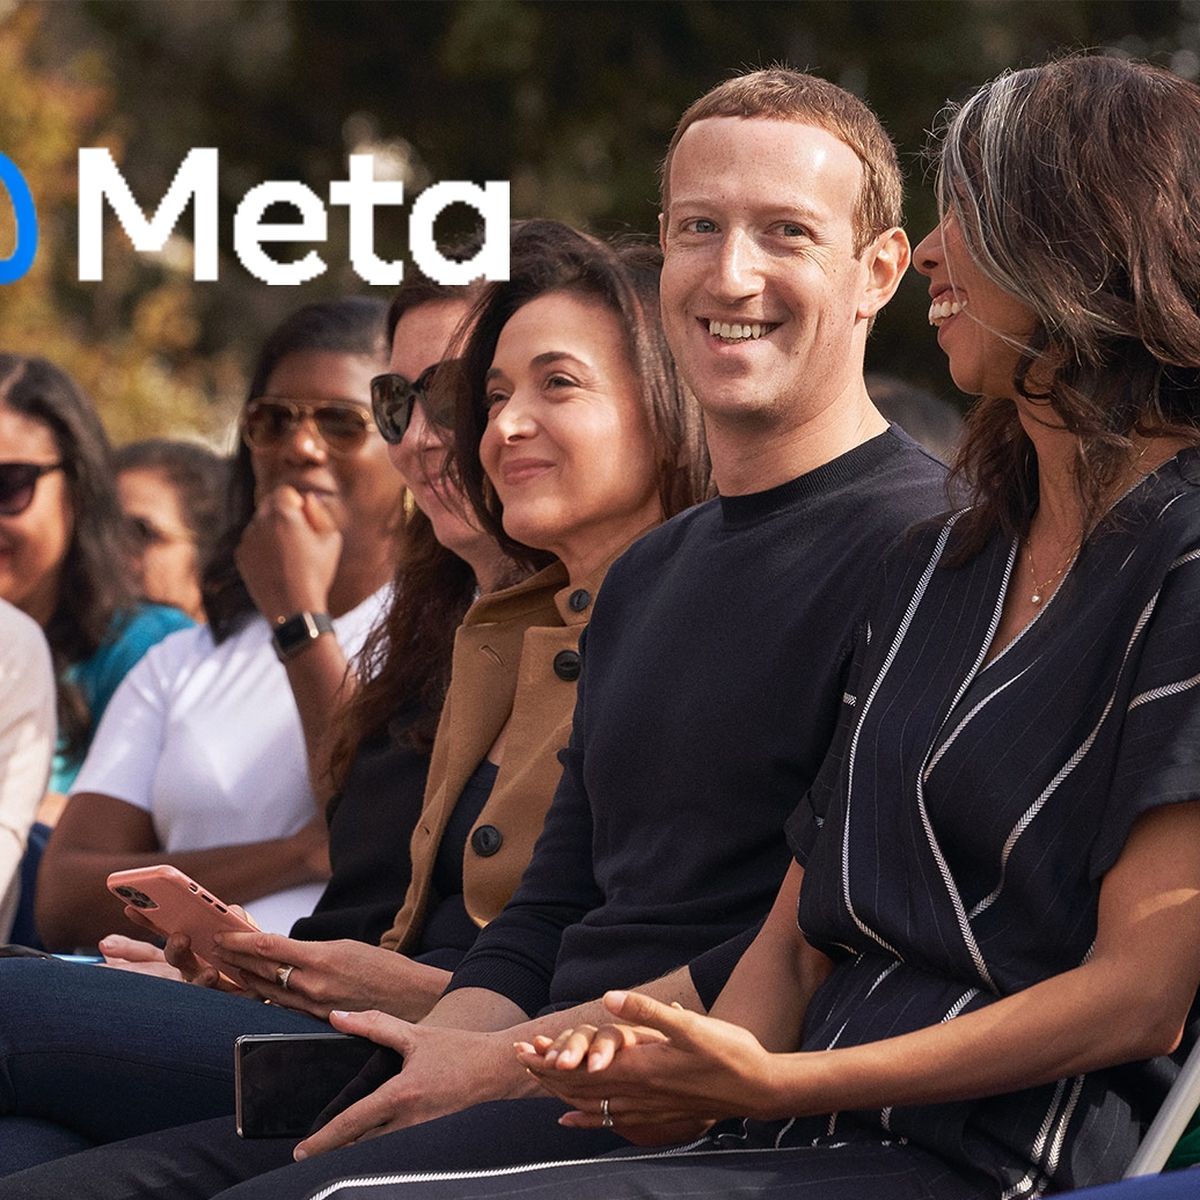 El Metaverso de Facebook: ¿Cómo puedes formar parte de él? 